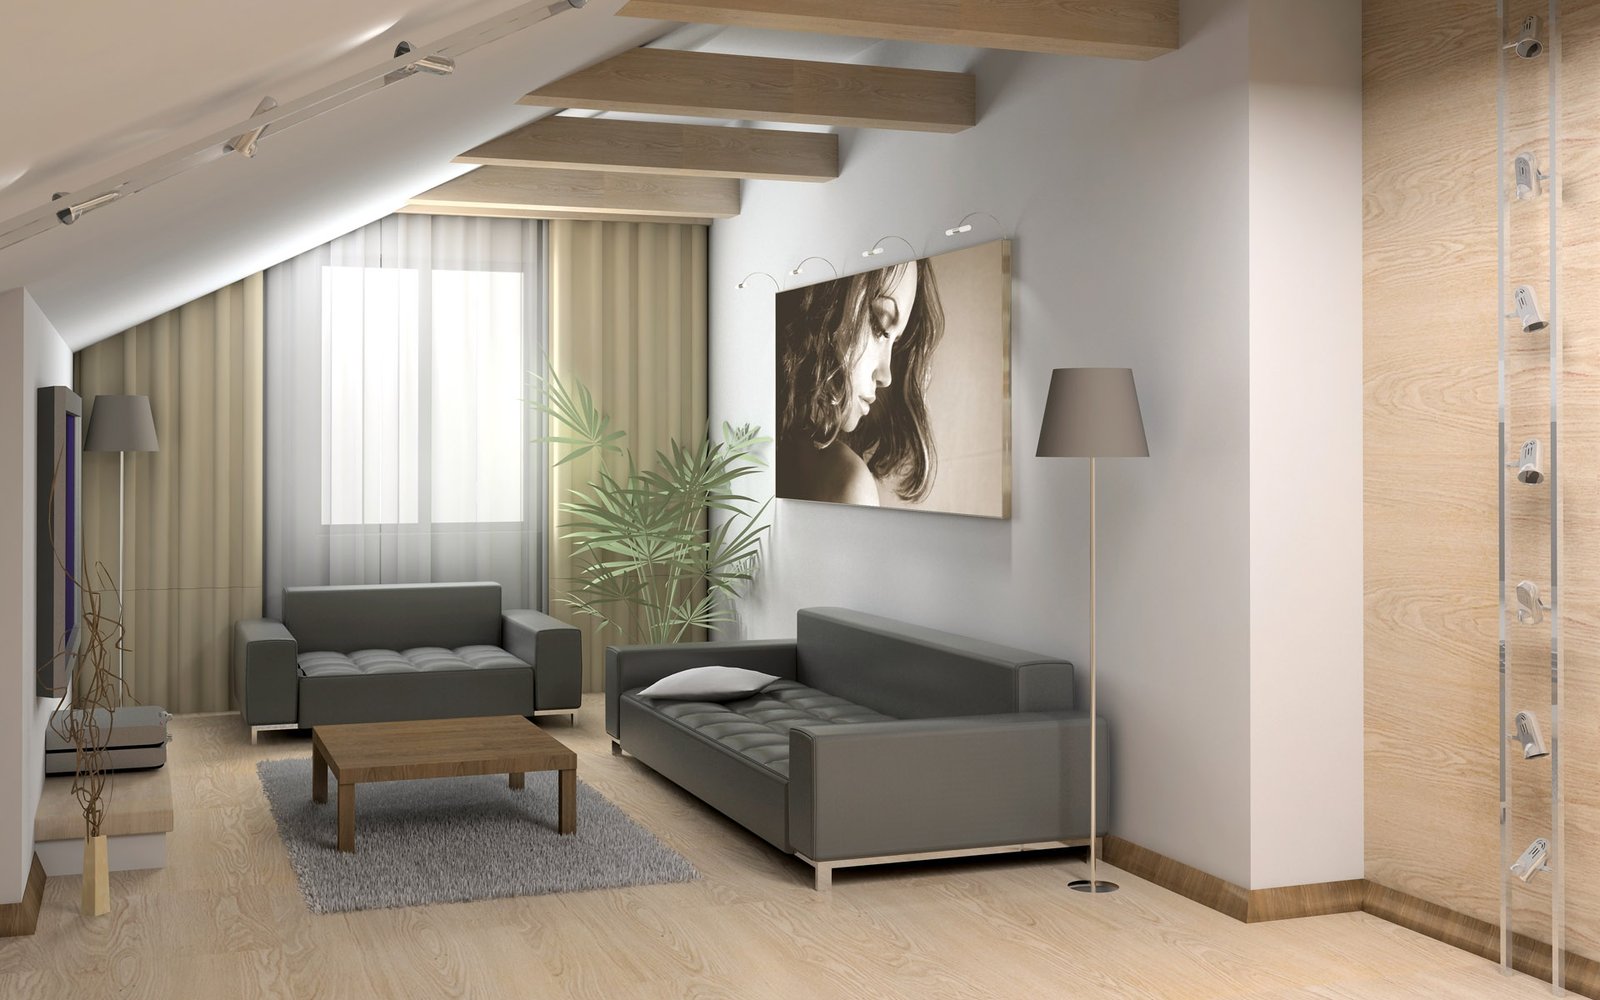 living-room-furniture-ideas living room furniture ideas